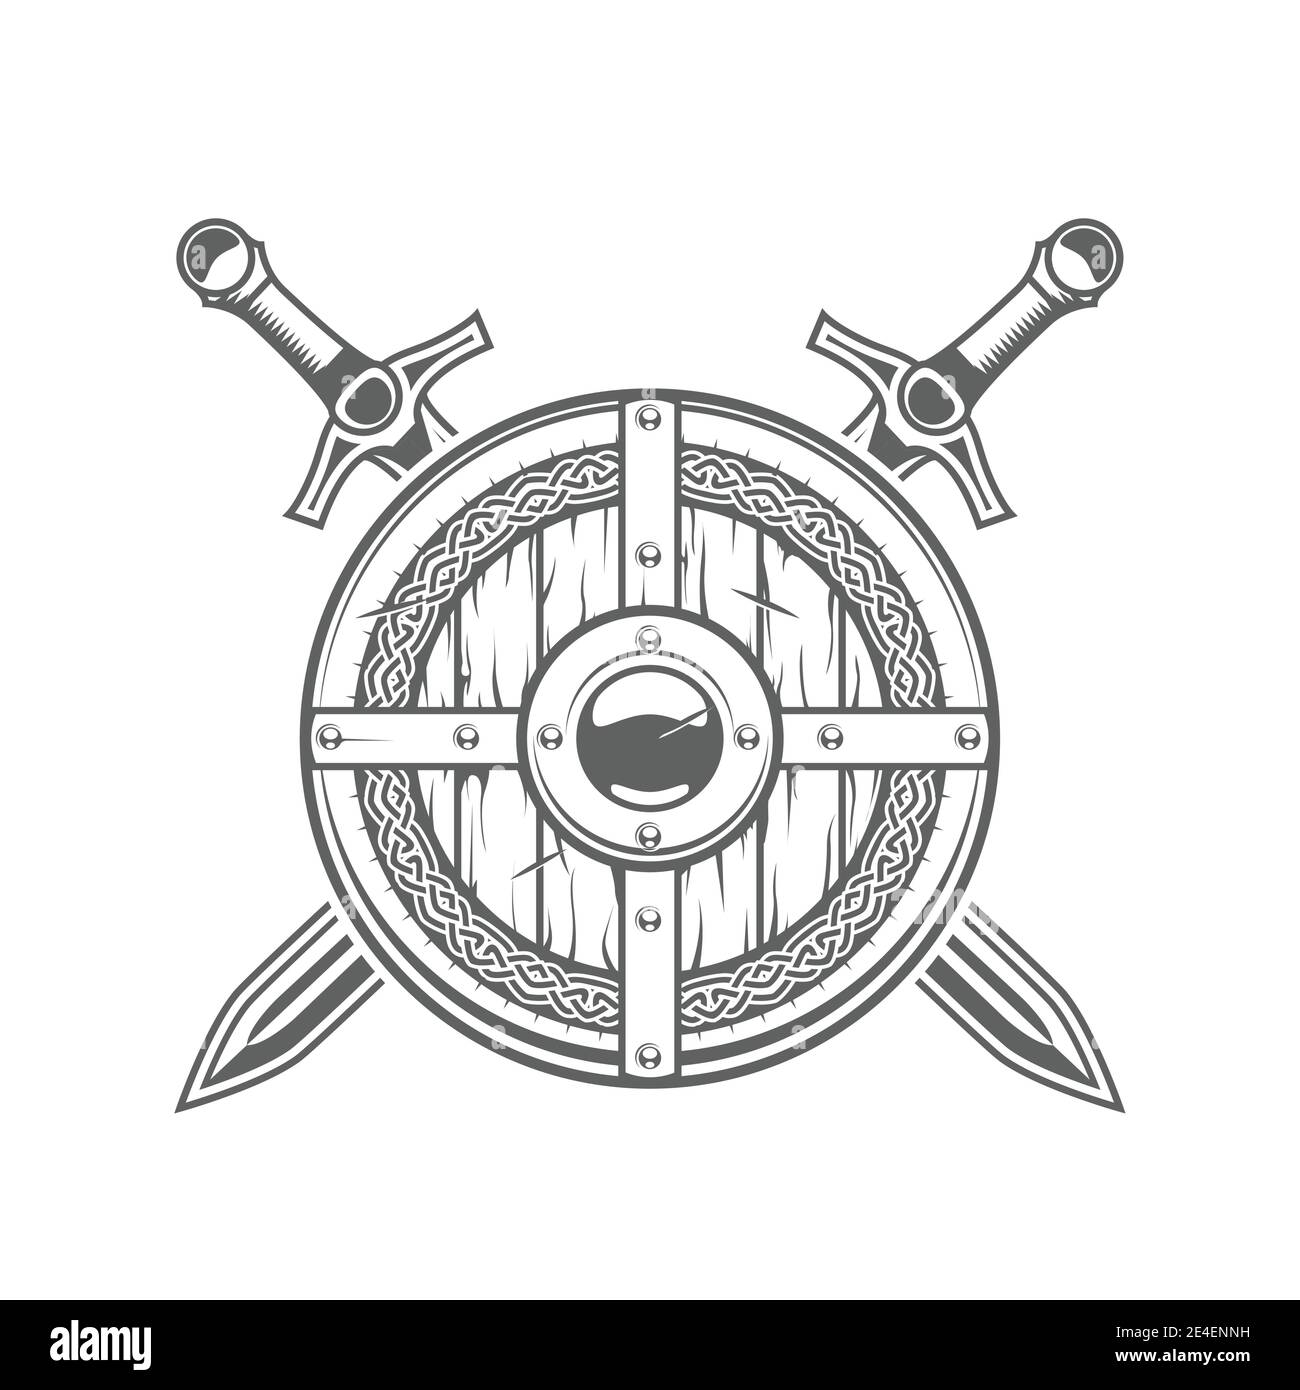 Bouclier viking rond avec motif celtique et deux épées croisées, emblème chevalier médiéval avec armure, vecteur Illustration de Vecteur